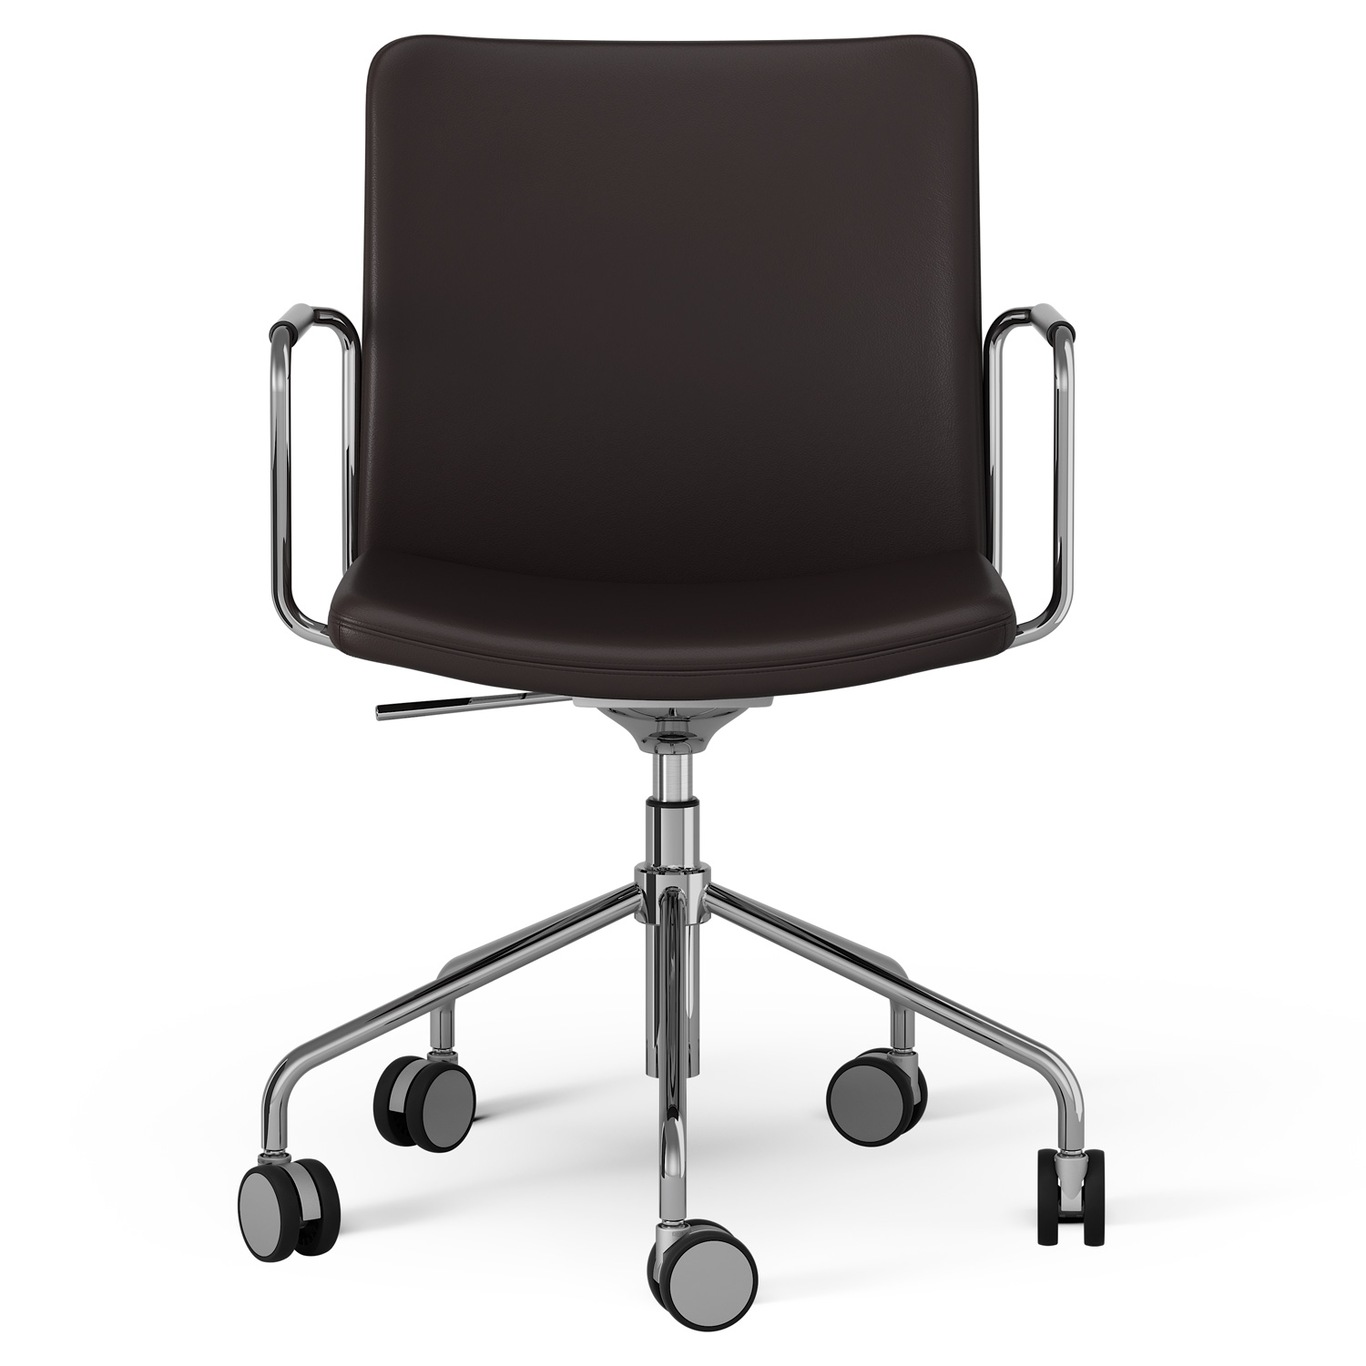 Stella Chair With Wheel Adjustable , Chrome / Dark Brown